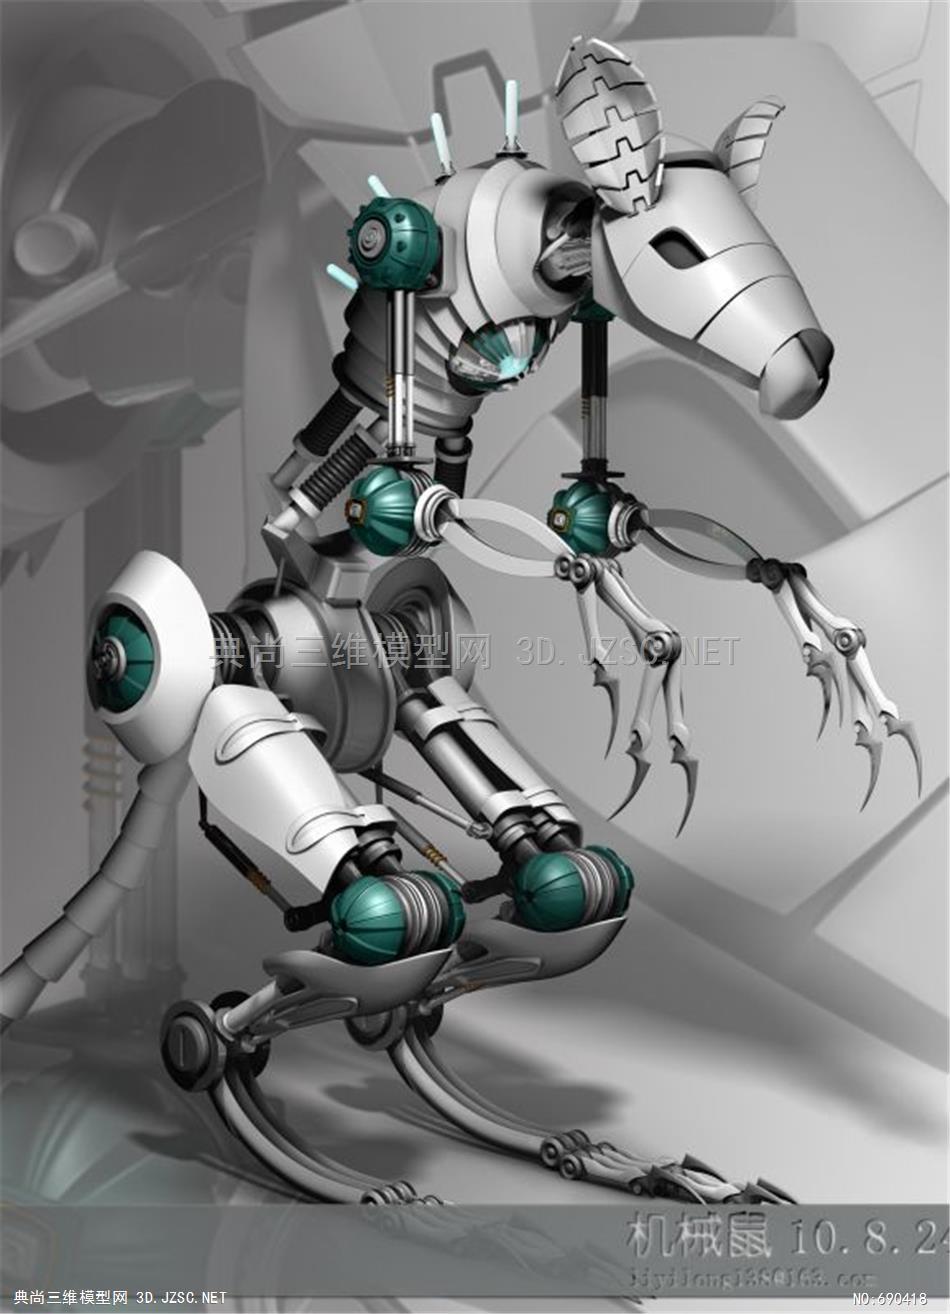 机器人 吸顶灯 摩托车 动漫玩具机械狗鼠机械 模型3dmax模型